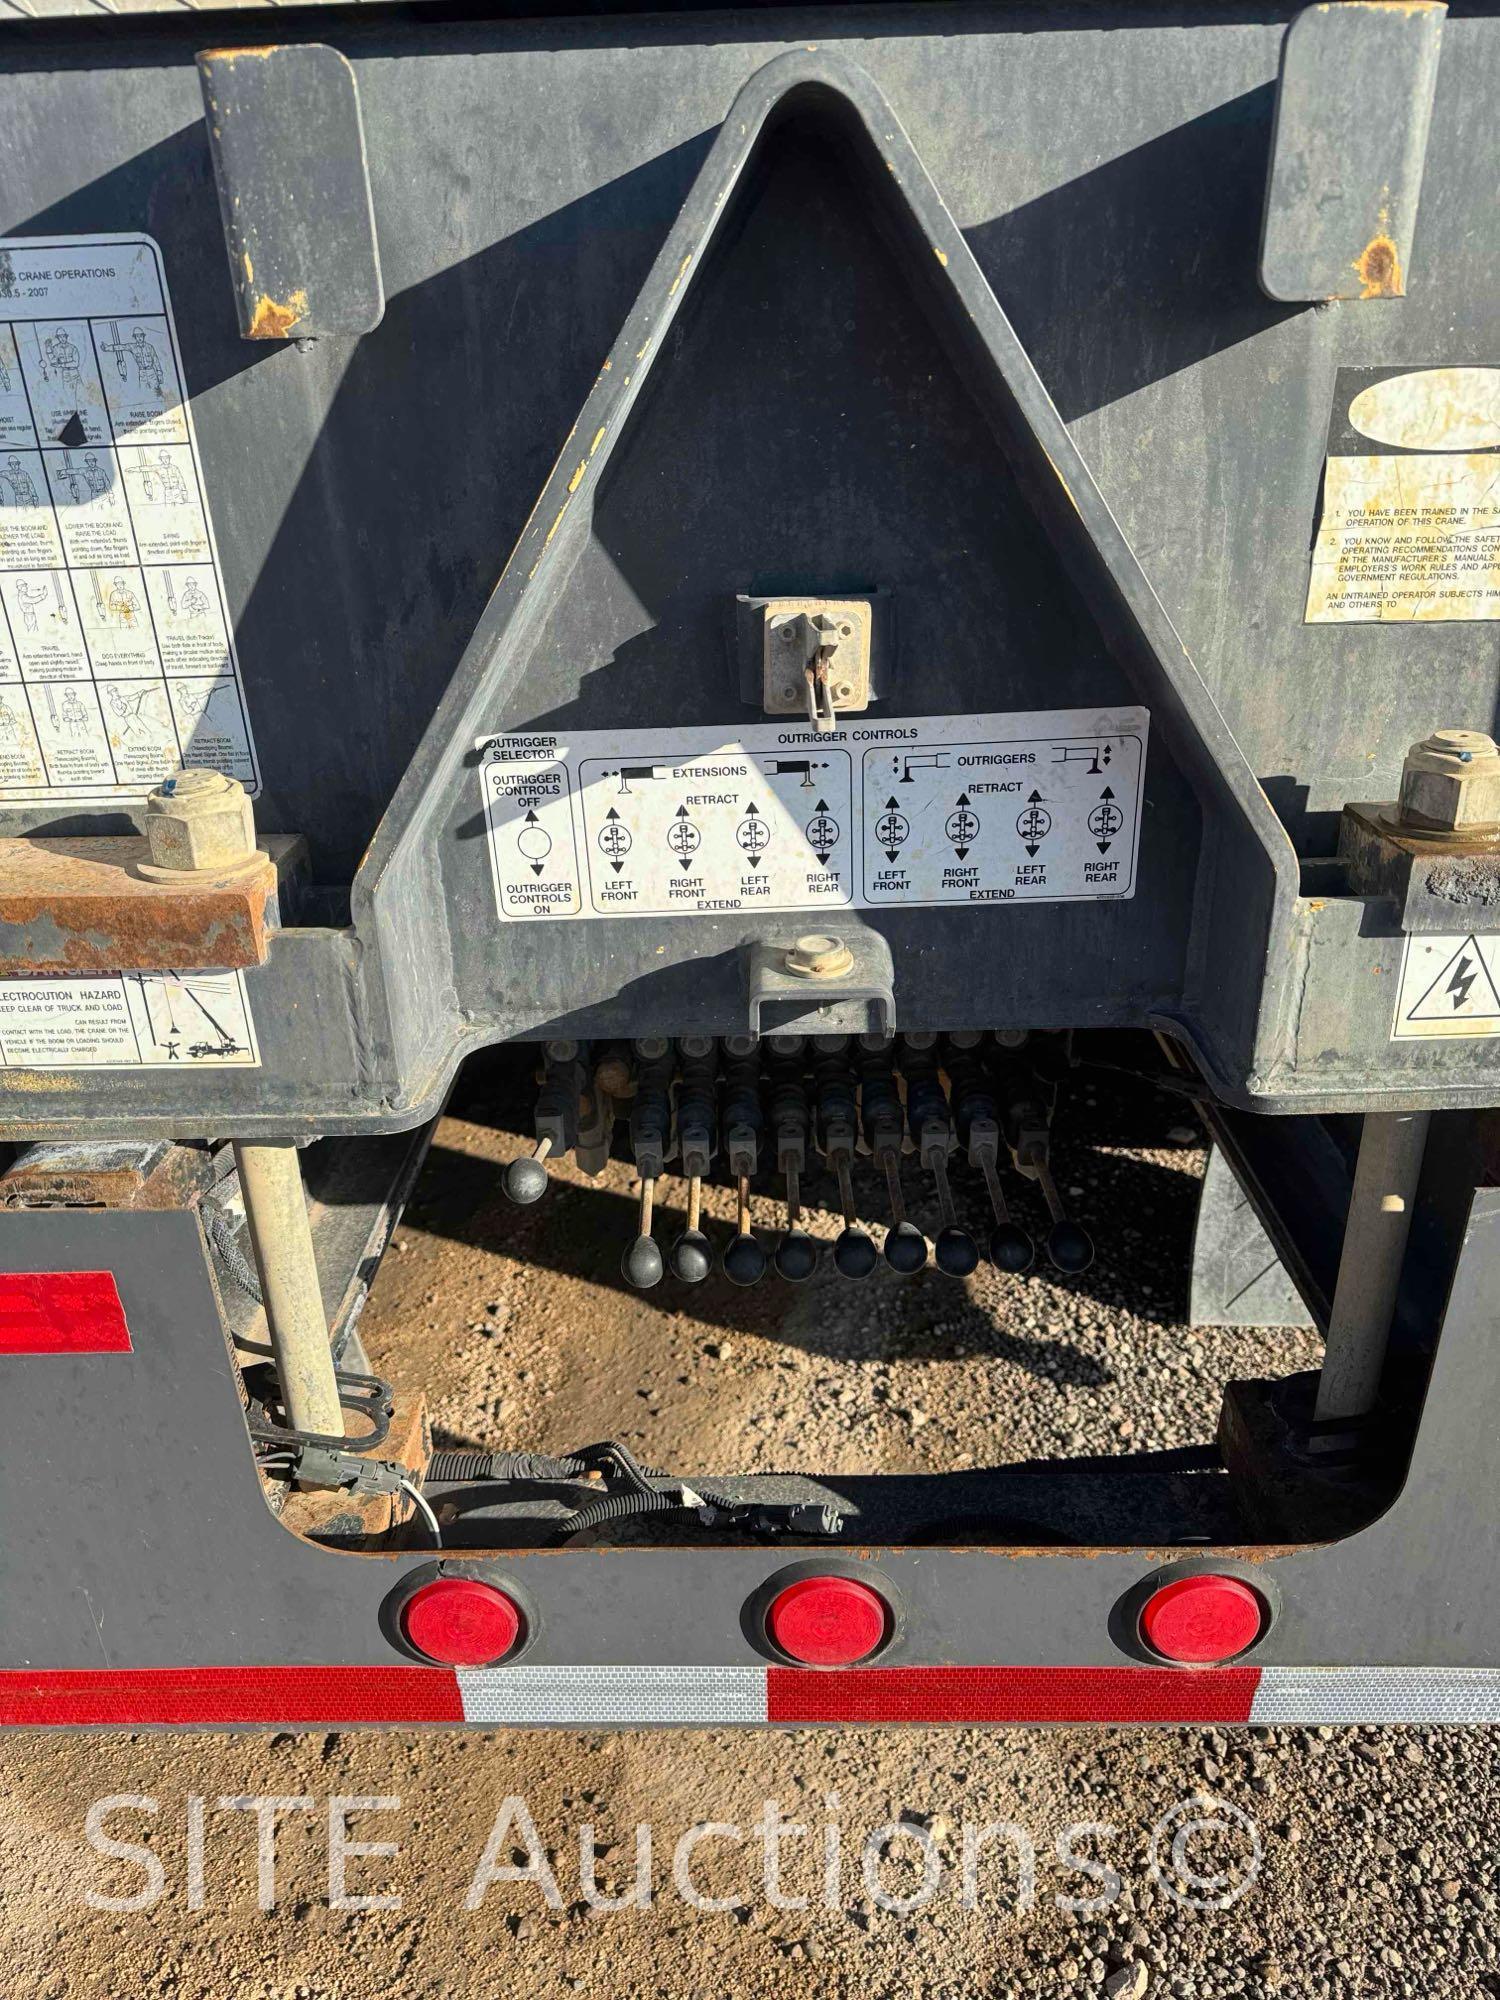 2015 Peterbilt 365 Quad/A Crane Truck w/ Manitex 50155SHL Crane